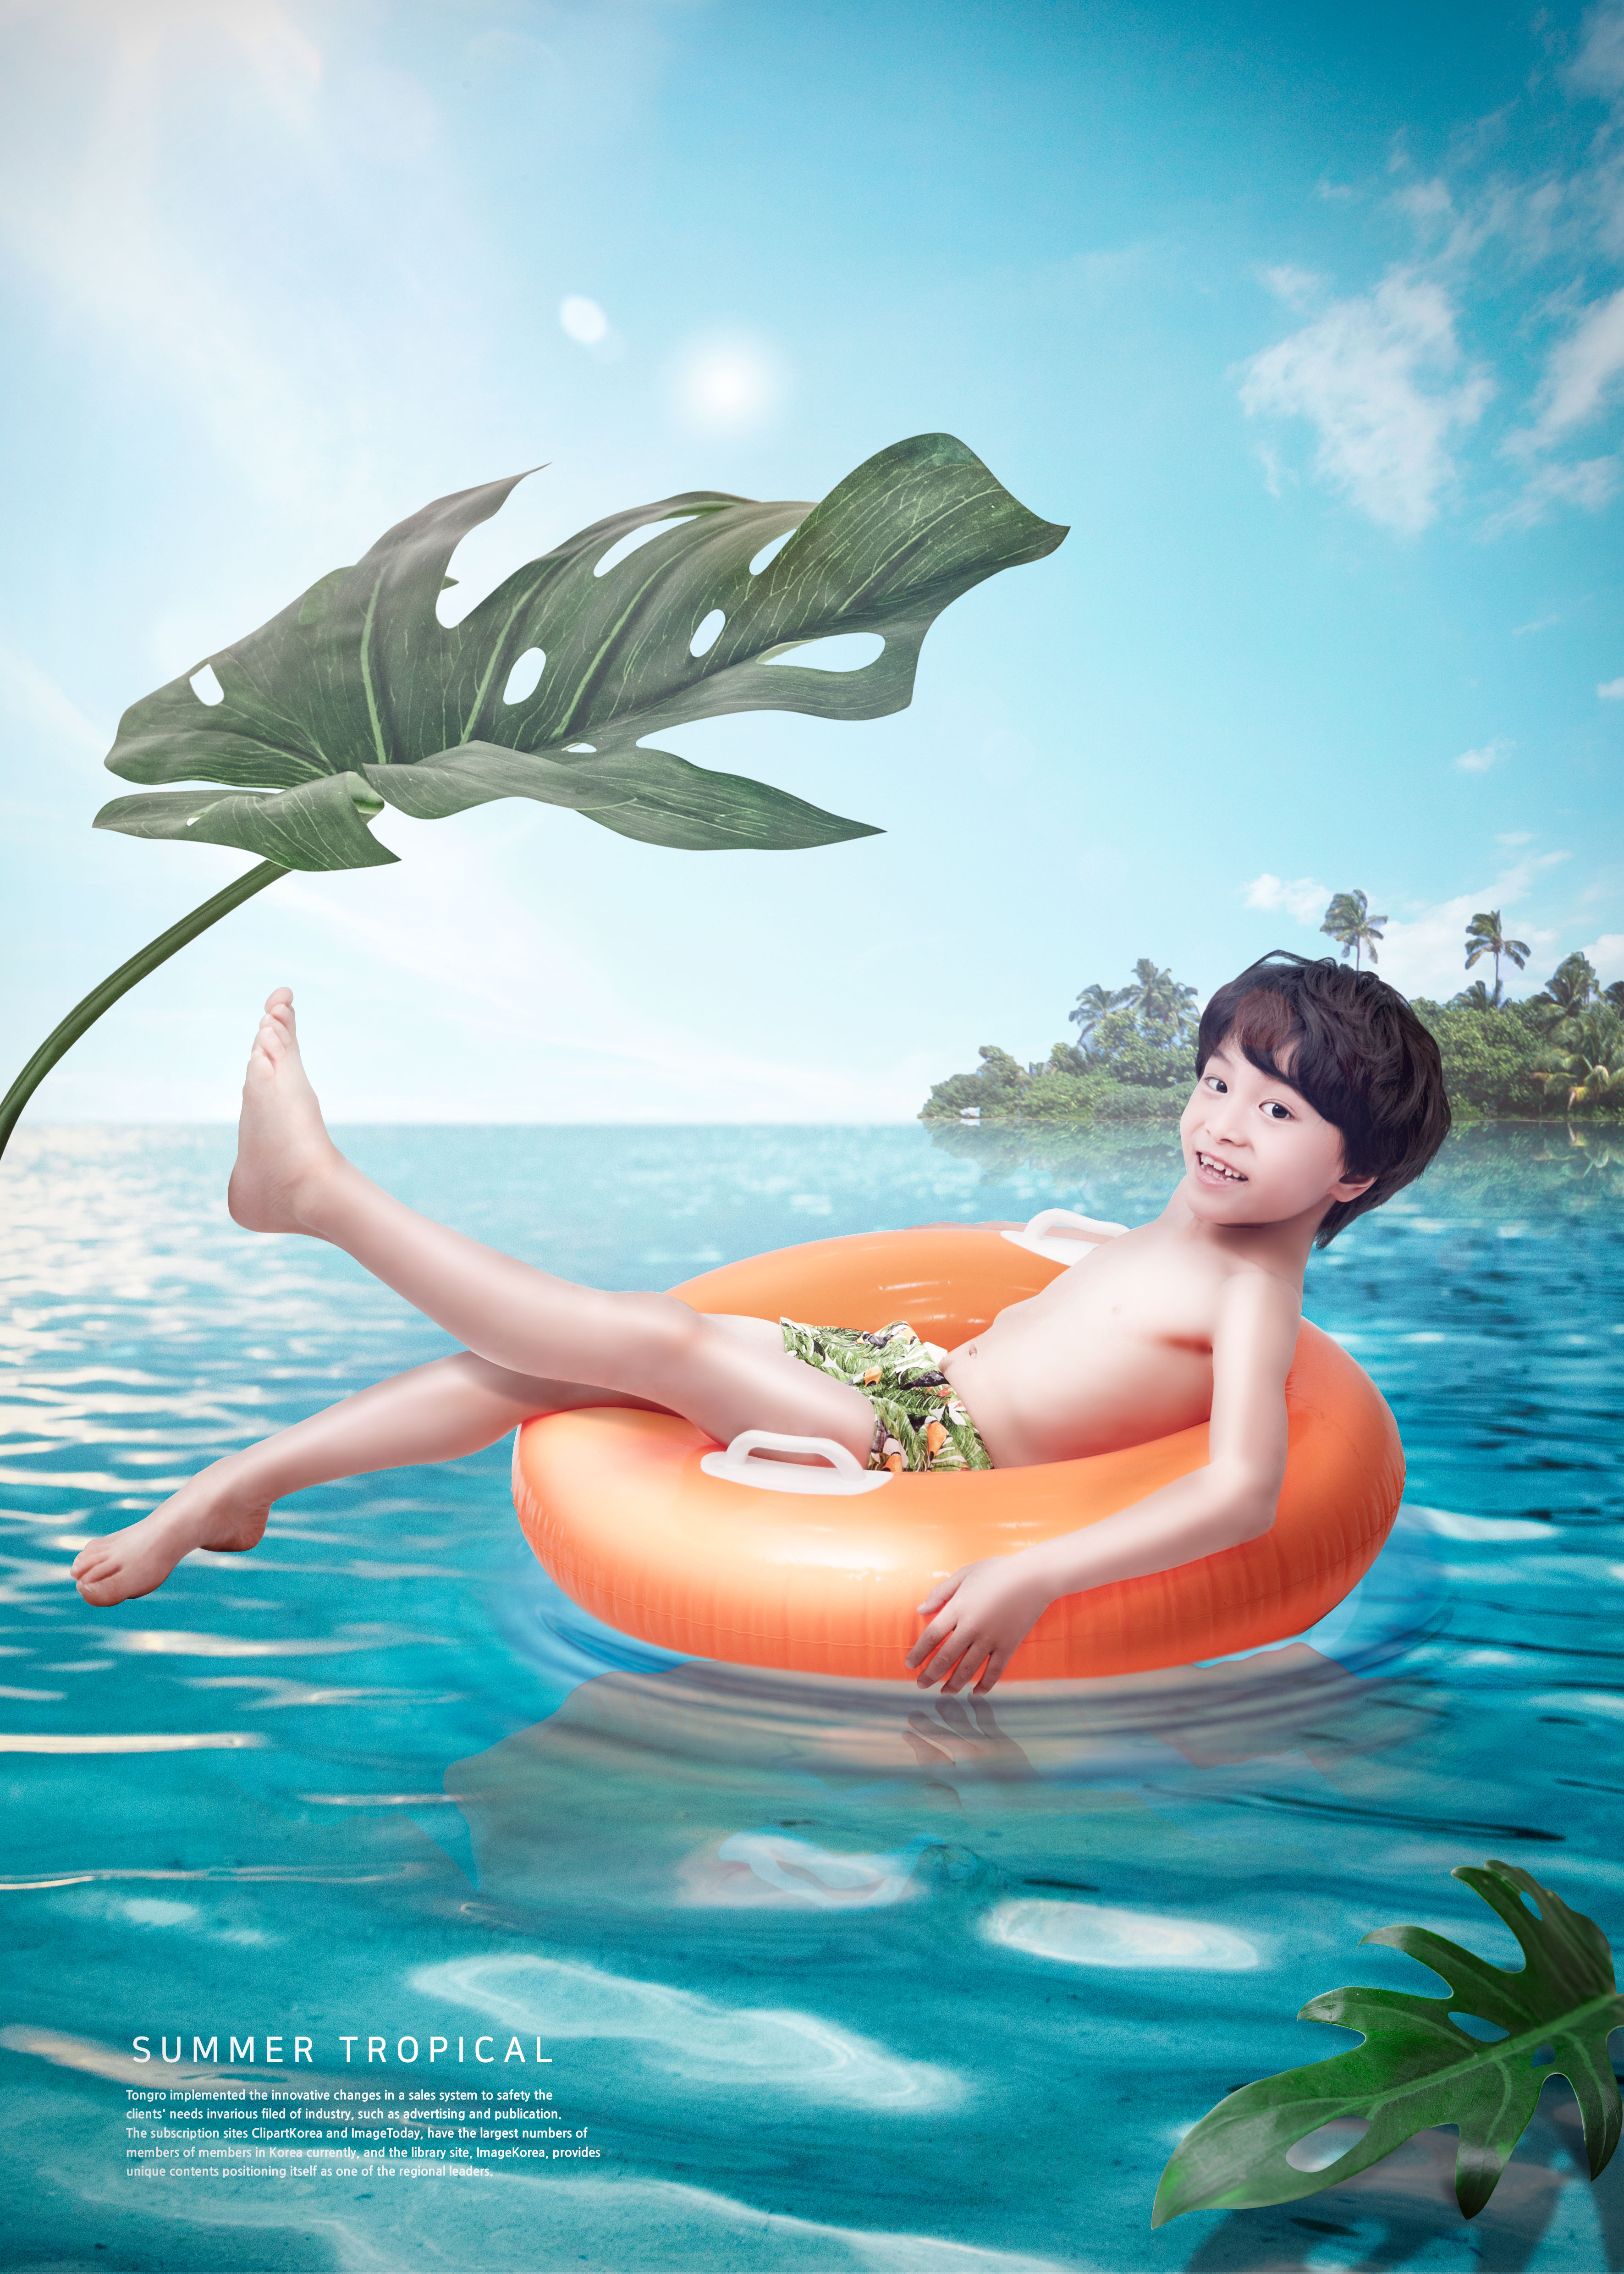 暑假热带旅游儿童主题广告海报设计模板插图(3)